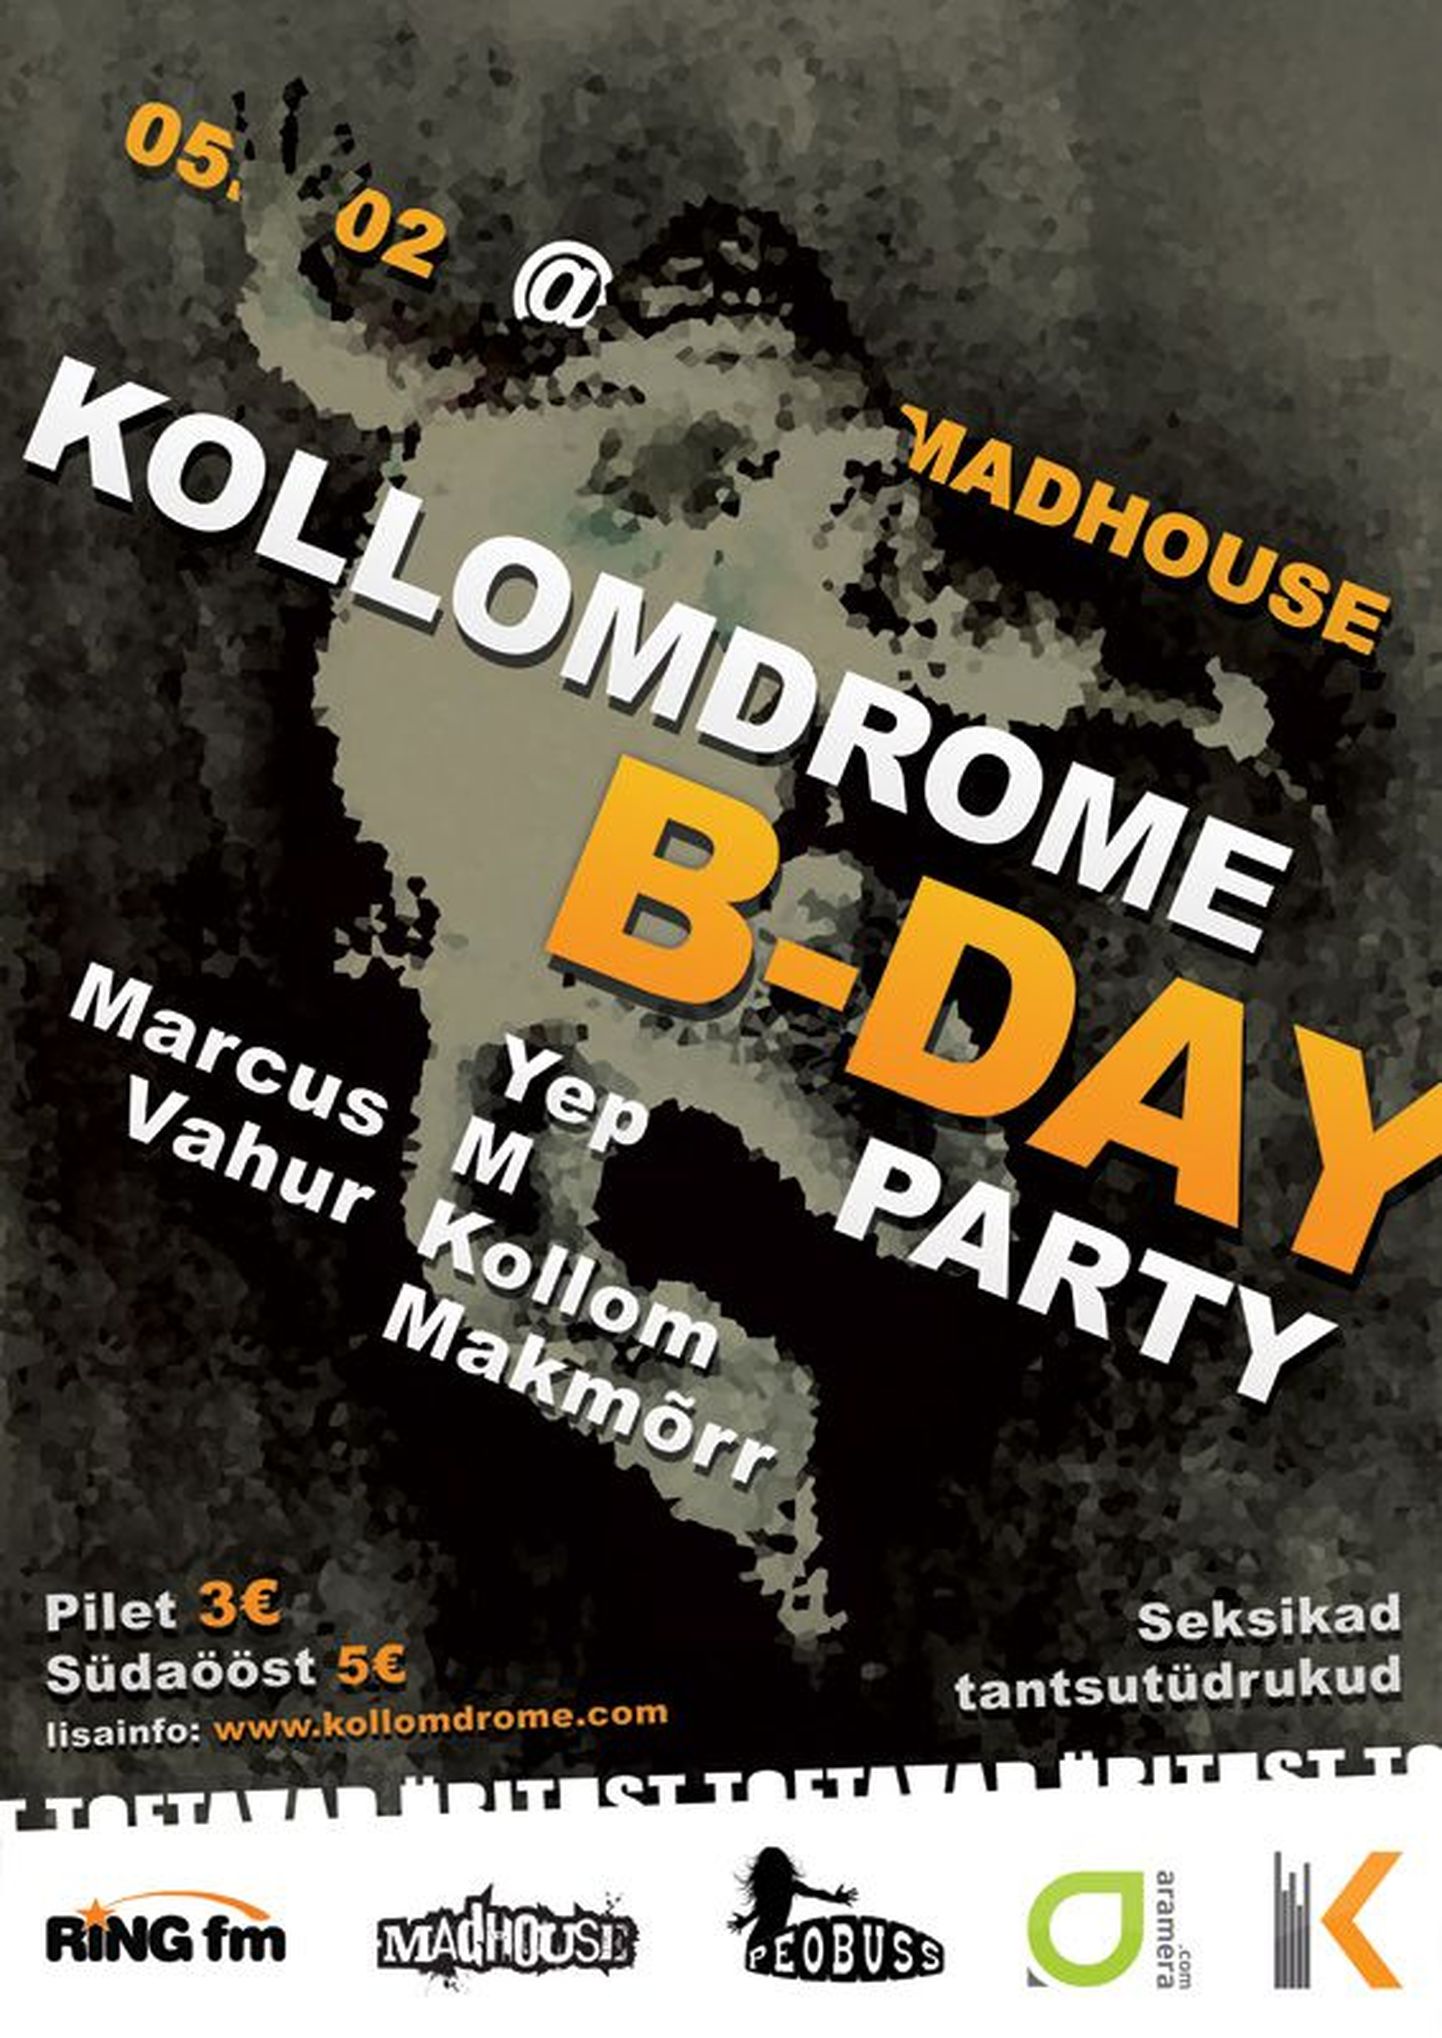 Saade Kollomdrome tähistab kolmandat sünnipäeva Madhouse'is!